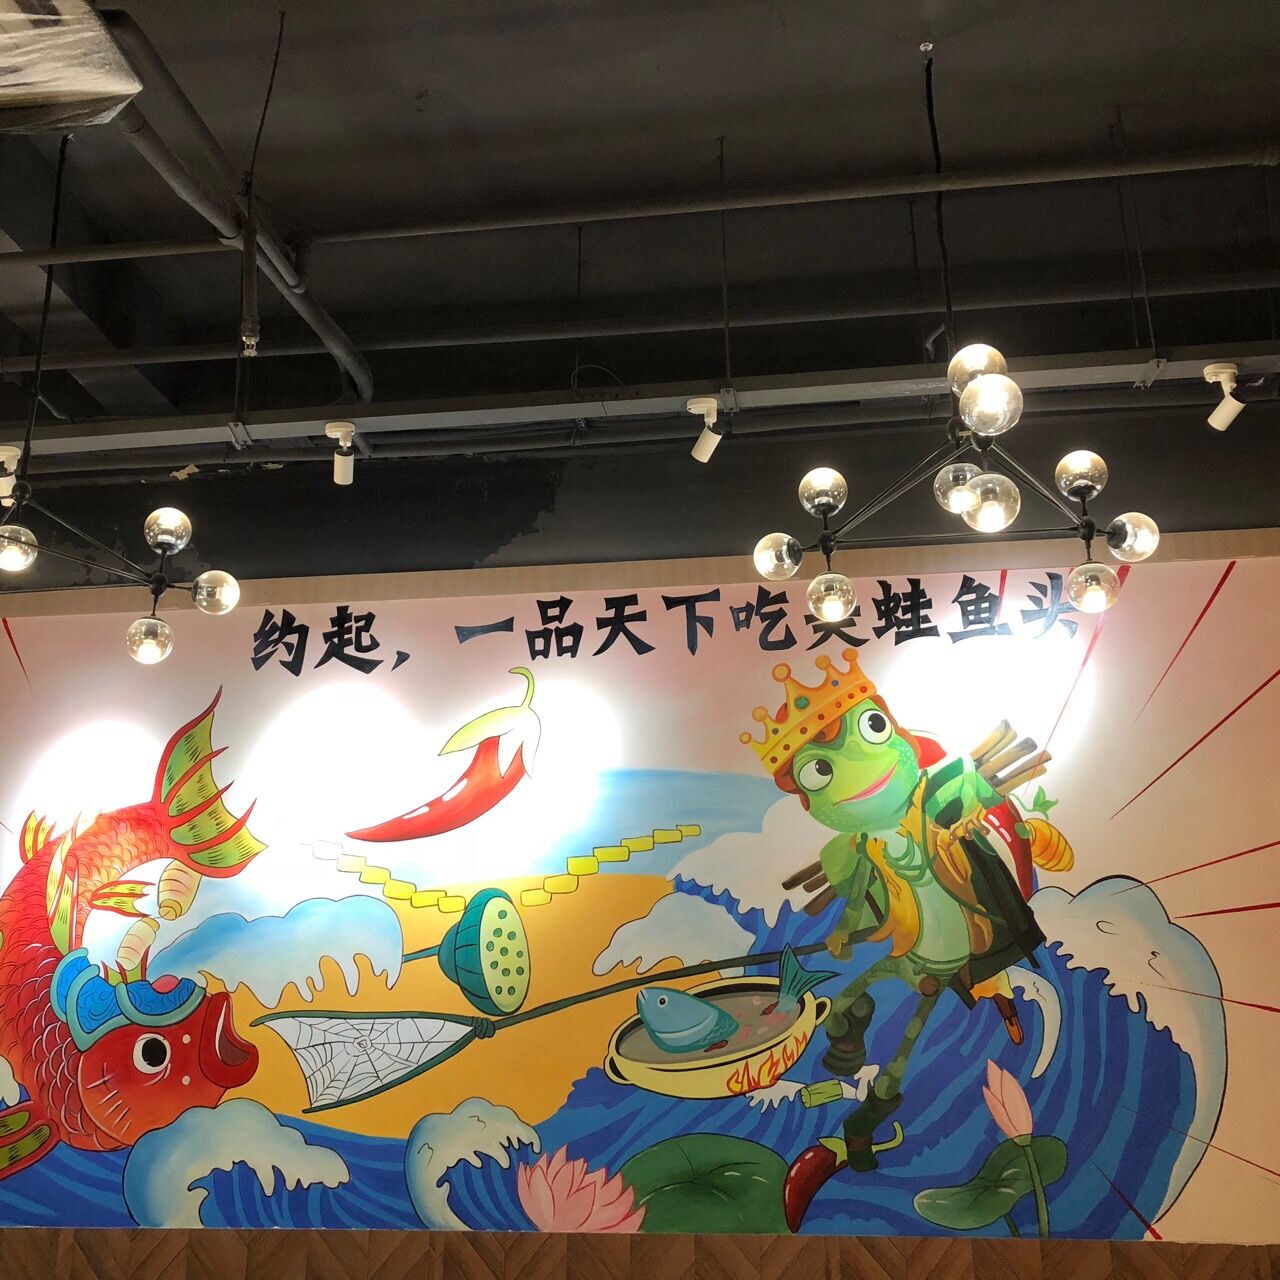 手绘壁画的匠心之作,美蛙鱼头创意墙绘带来新商机